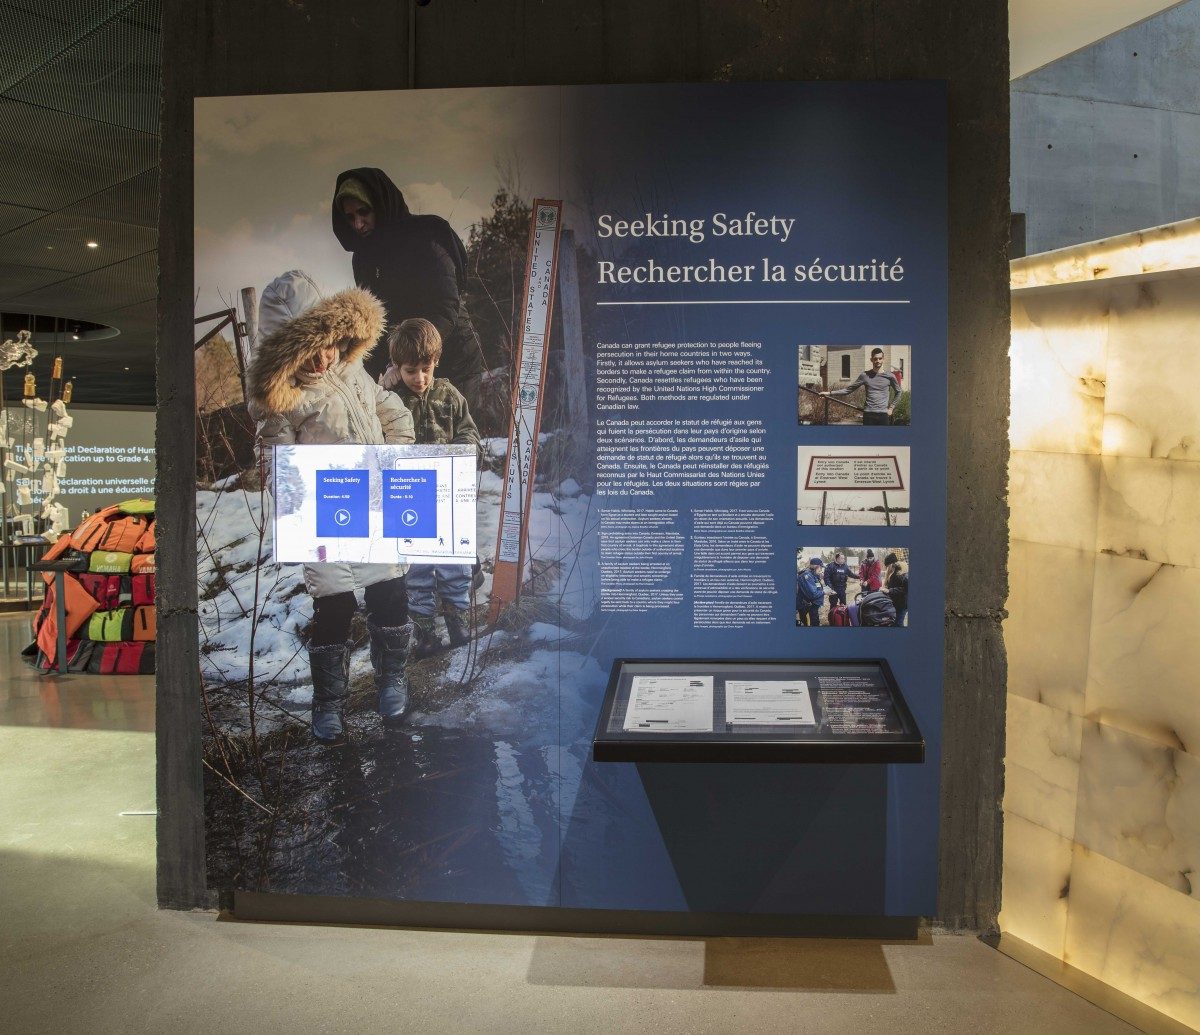 Seeking Safety exhibit at the CMHR. Photo credit: Jessica Sigurdson - CMHR